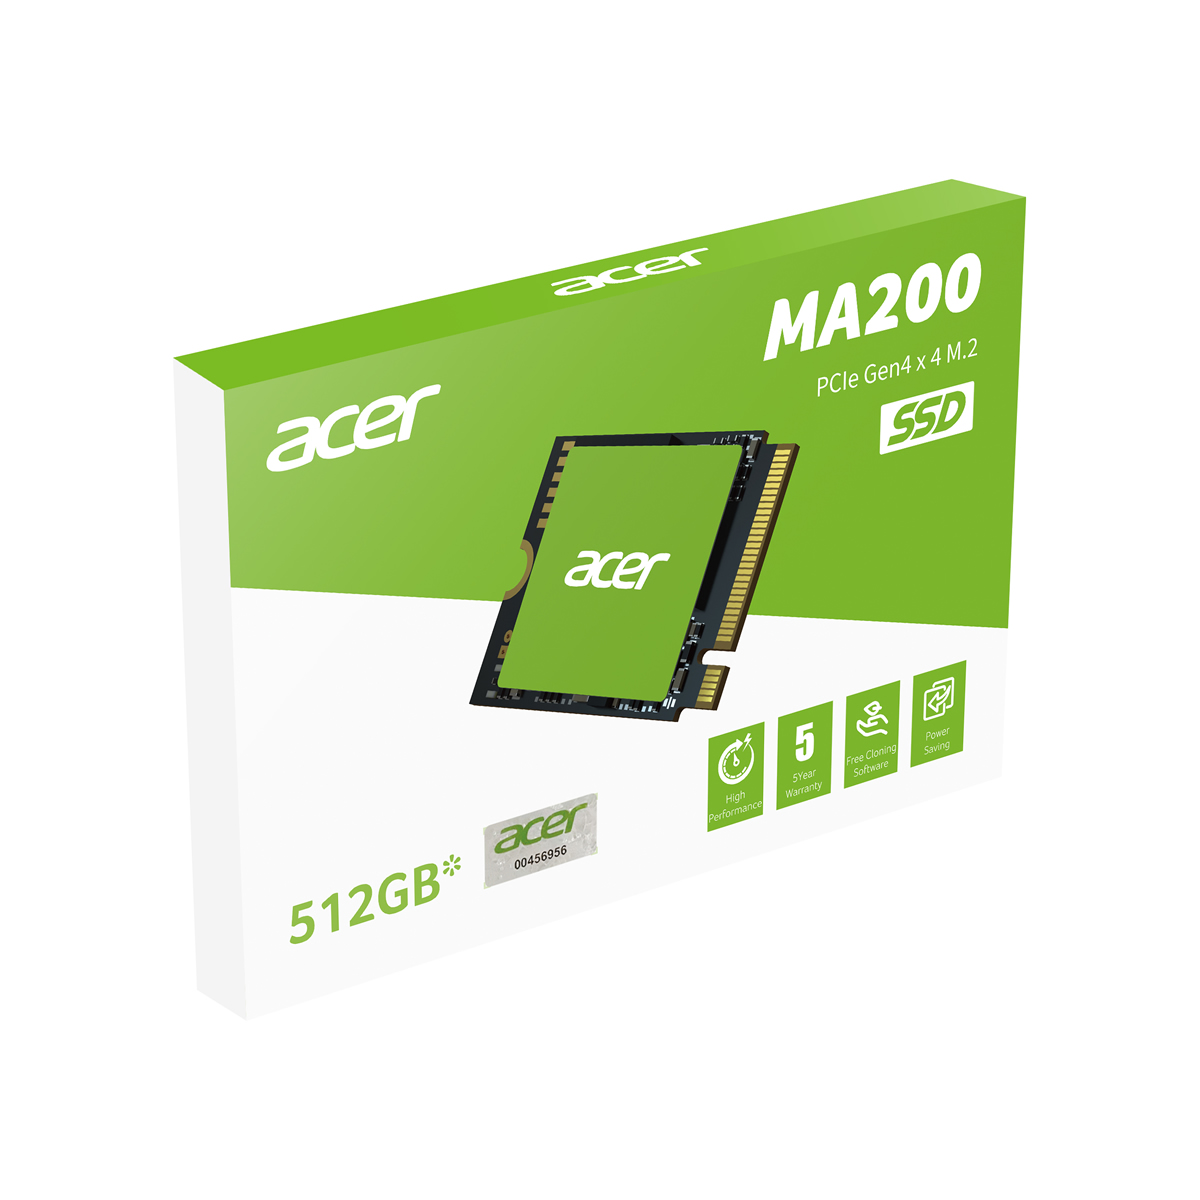 UNIDAD SSD ACER MA200 500GB M.2 NVME 2230 GEN4 5200MB/S (BL.9BWWA.153)